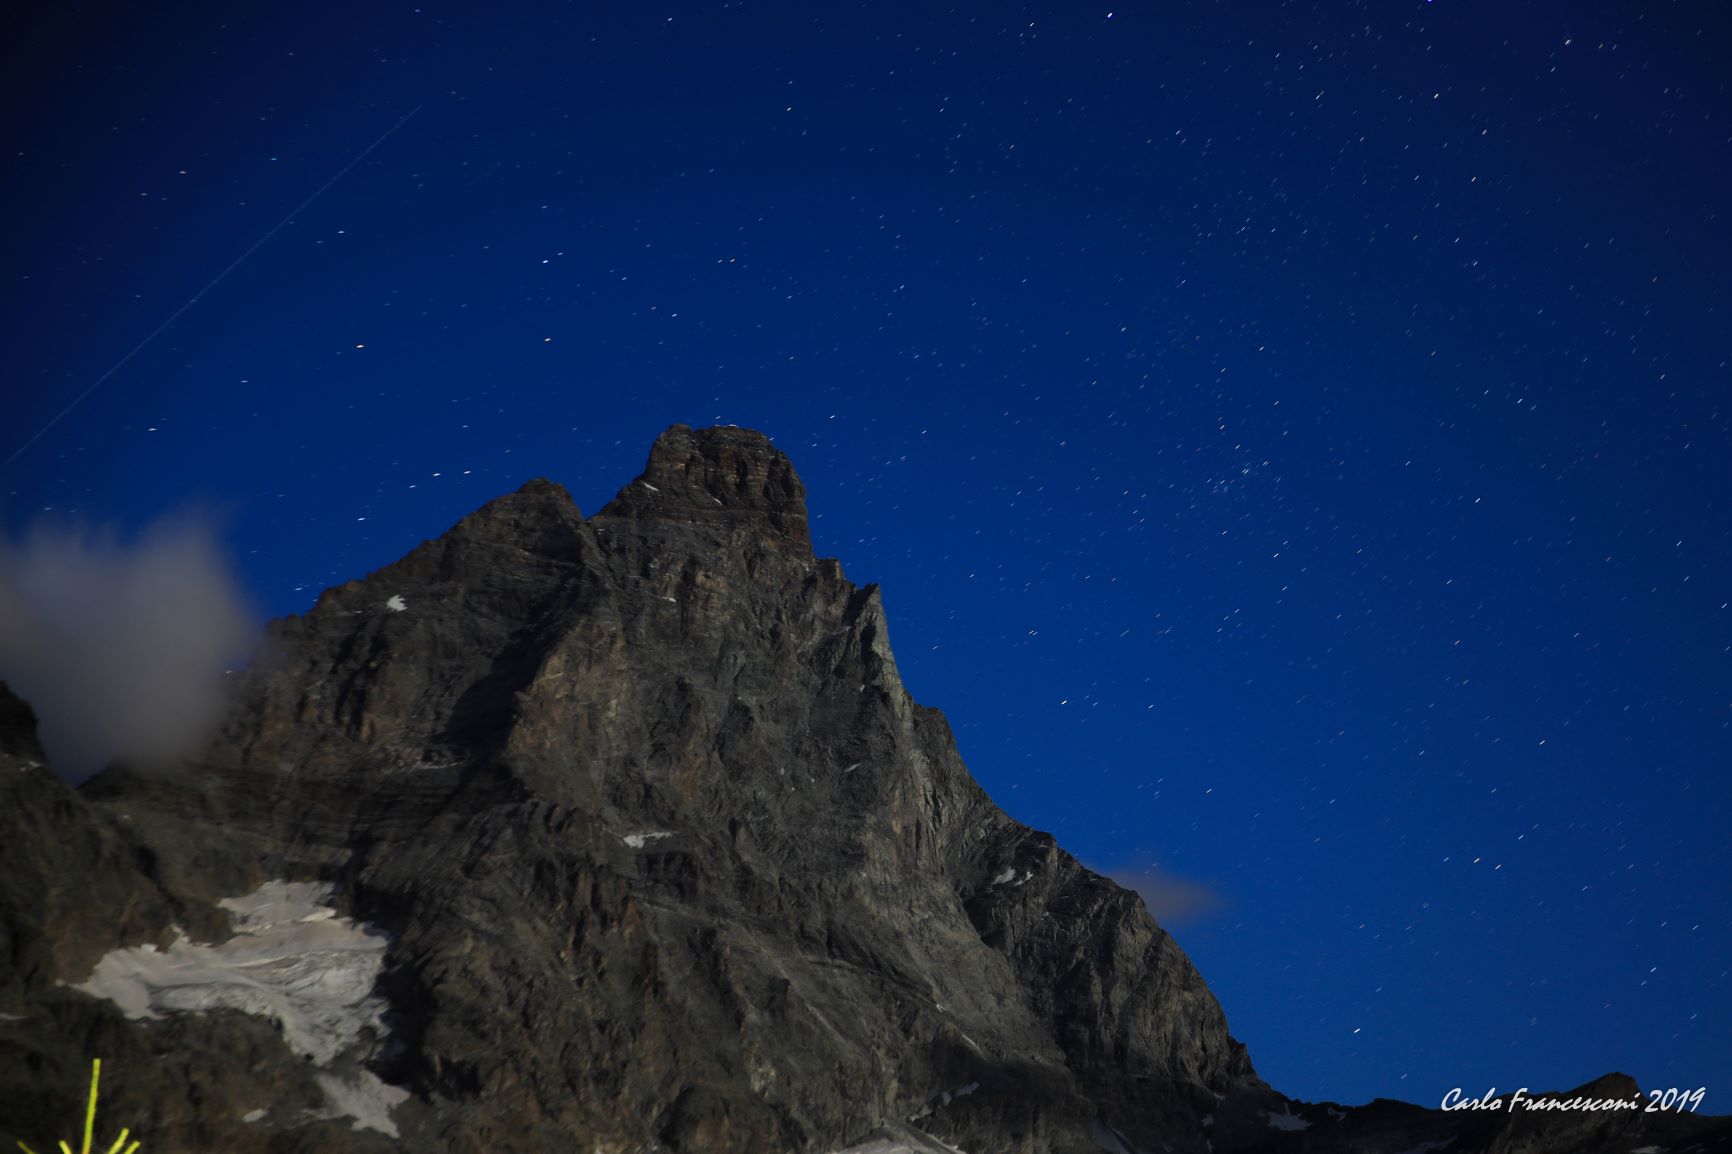 Matterhorn by night...